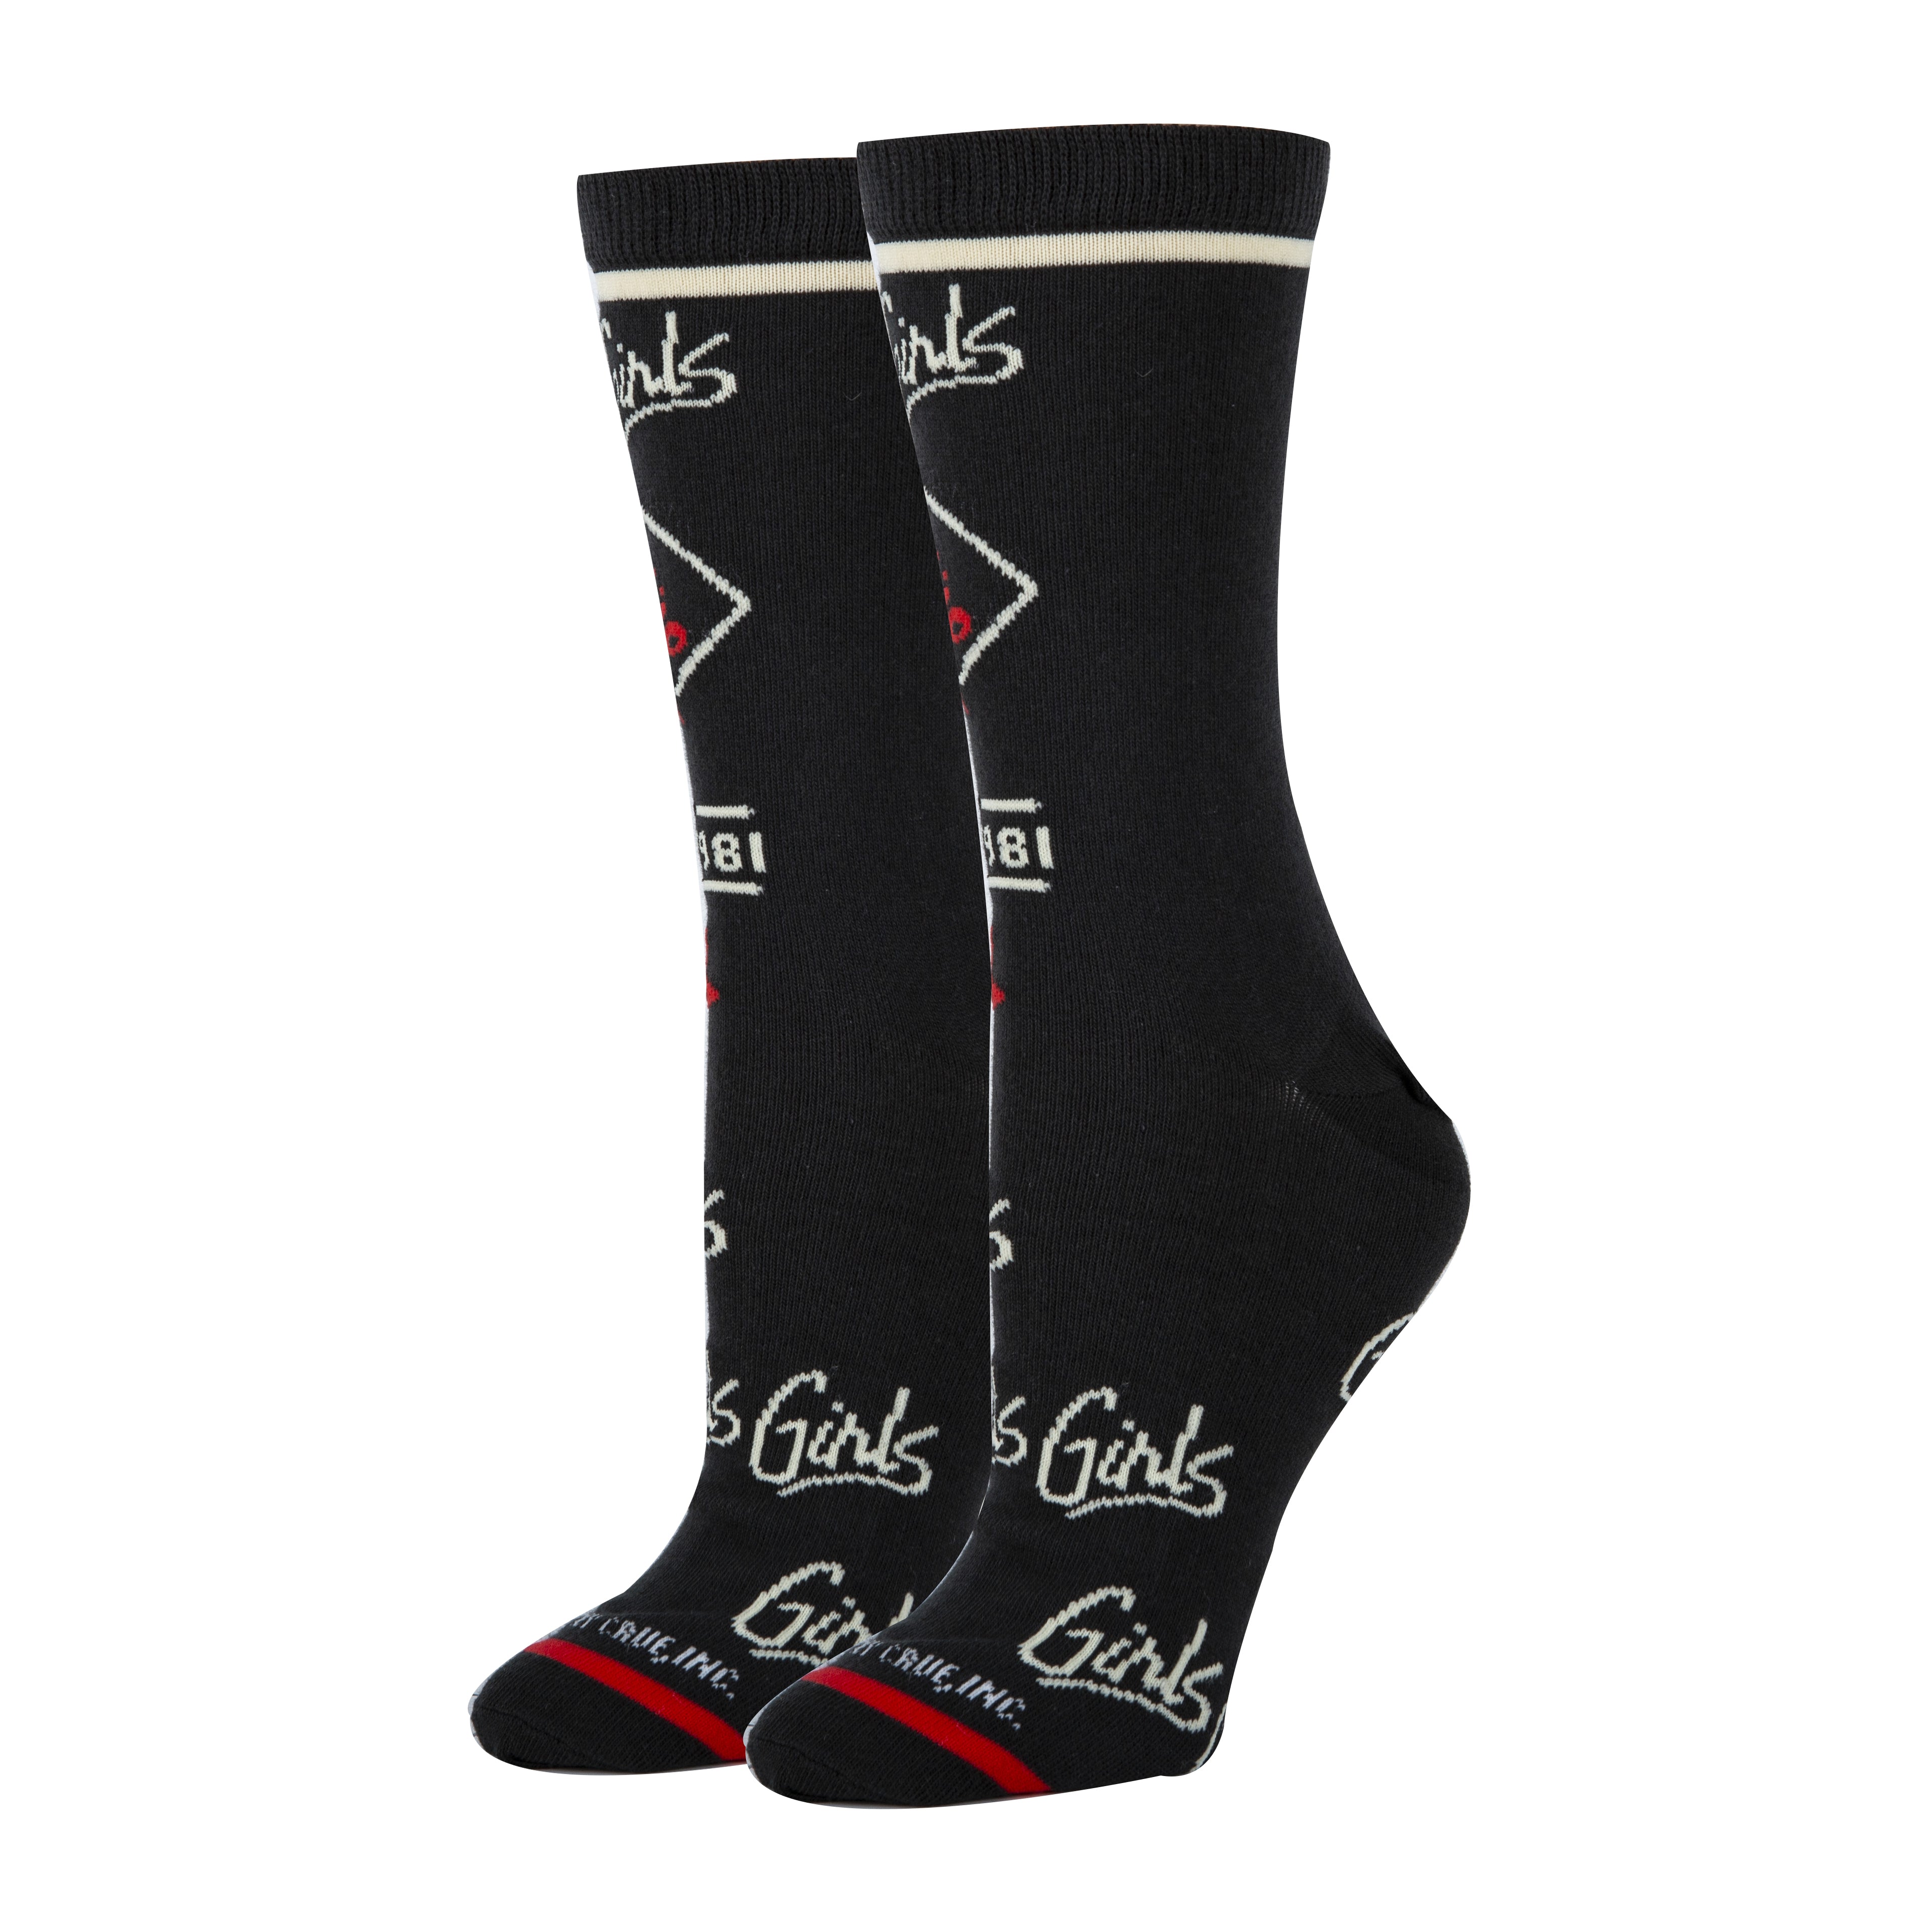 Girls Girls Girls Socks | Novelty Socks For Women